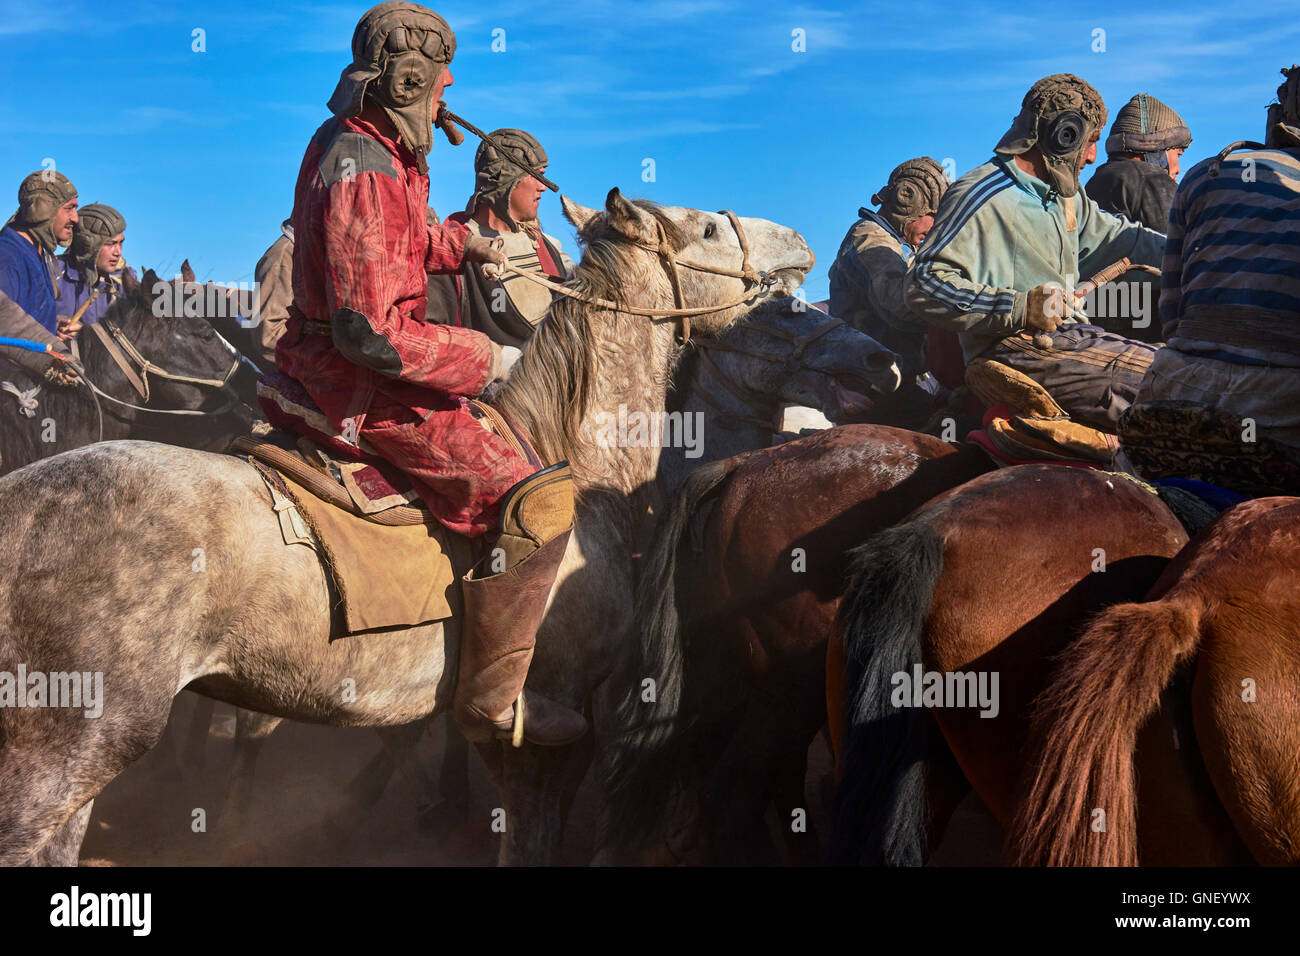 L'Ouzbékistan, Kachka Daria province, Buzkashi, cavaliers luttant pour un corps de mouton Banque D'Images